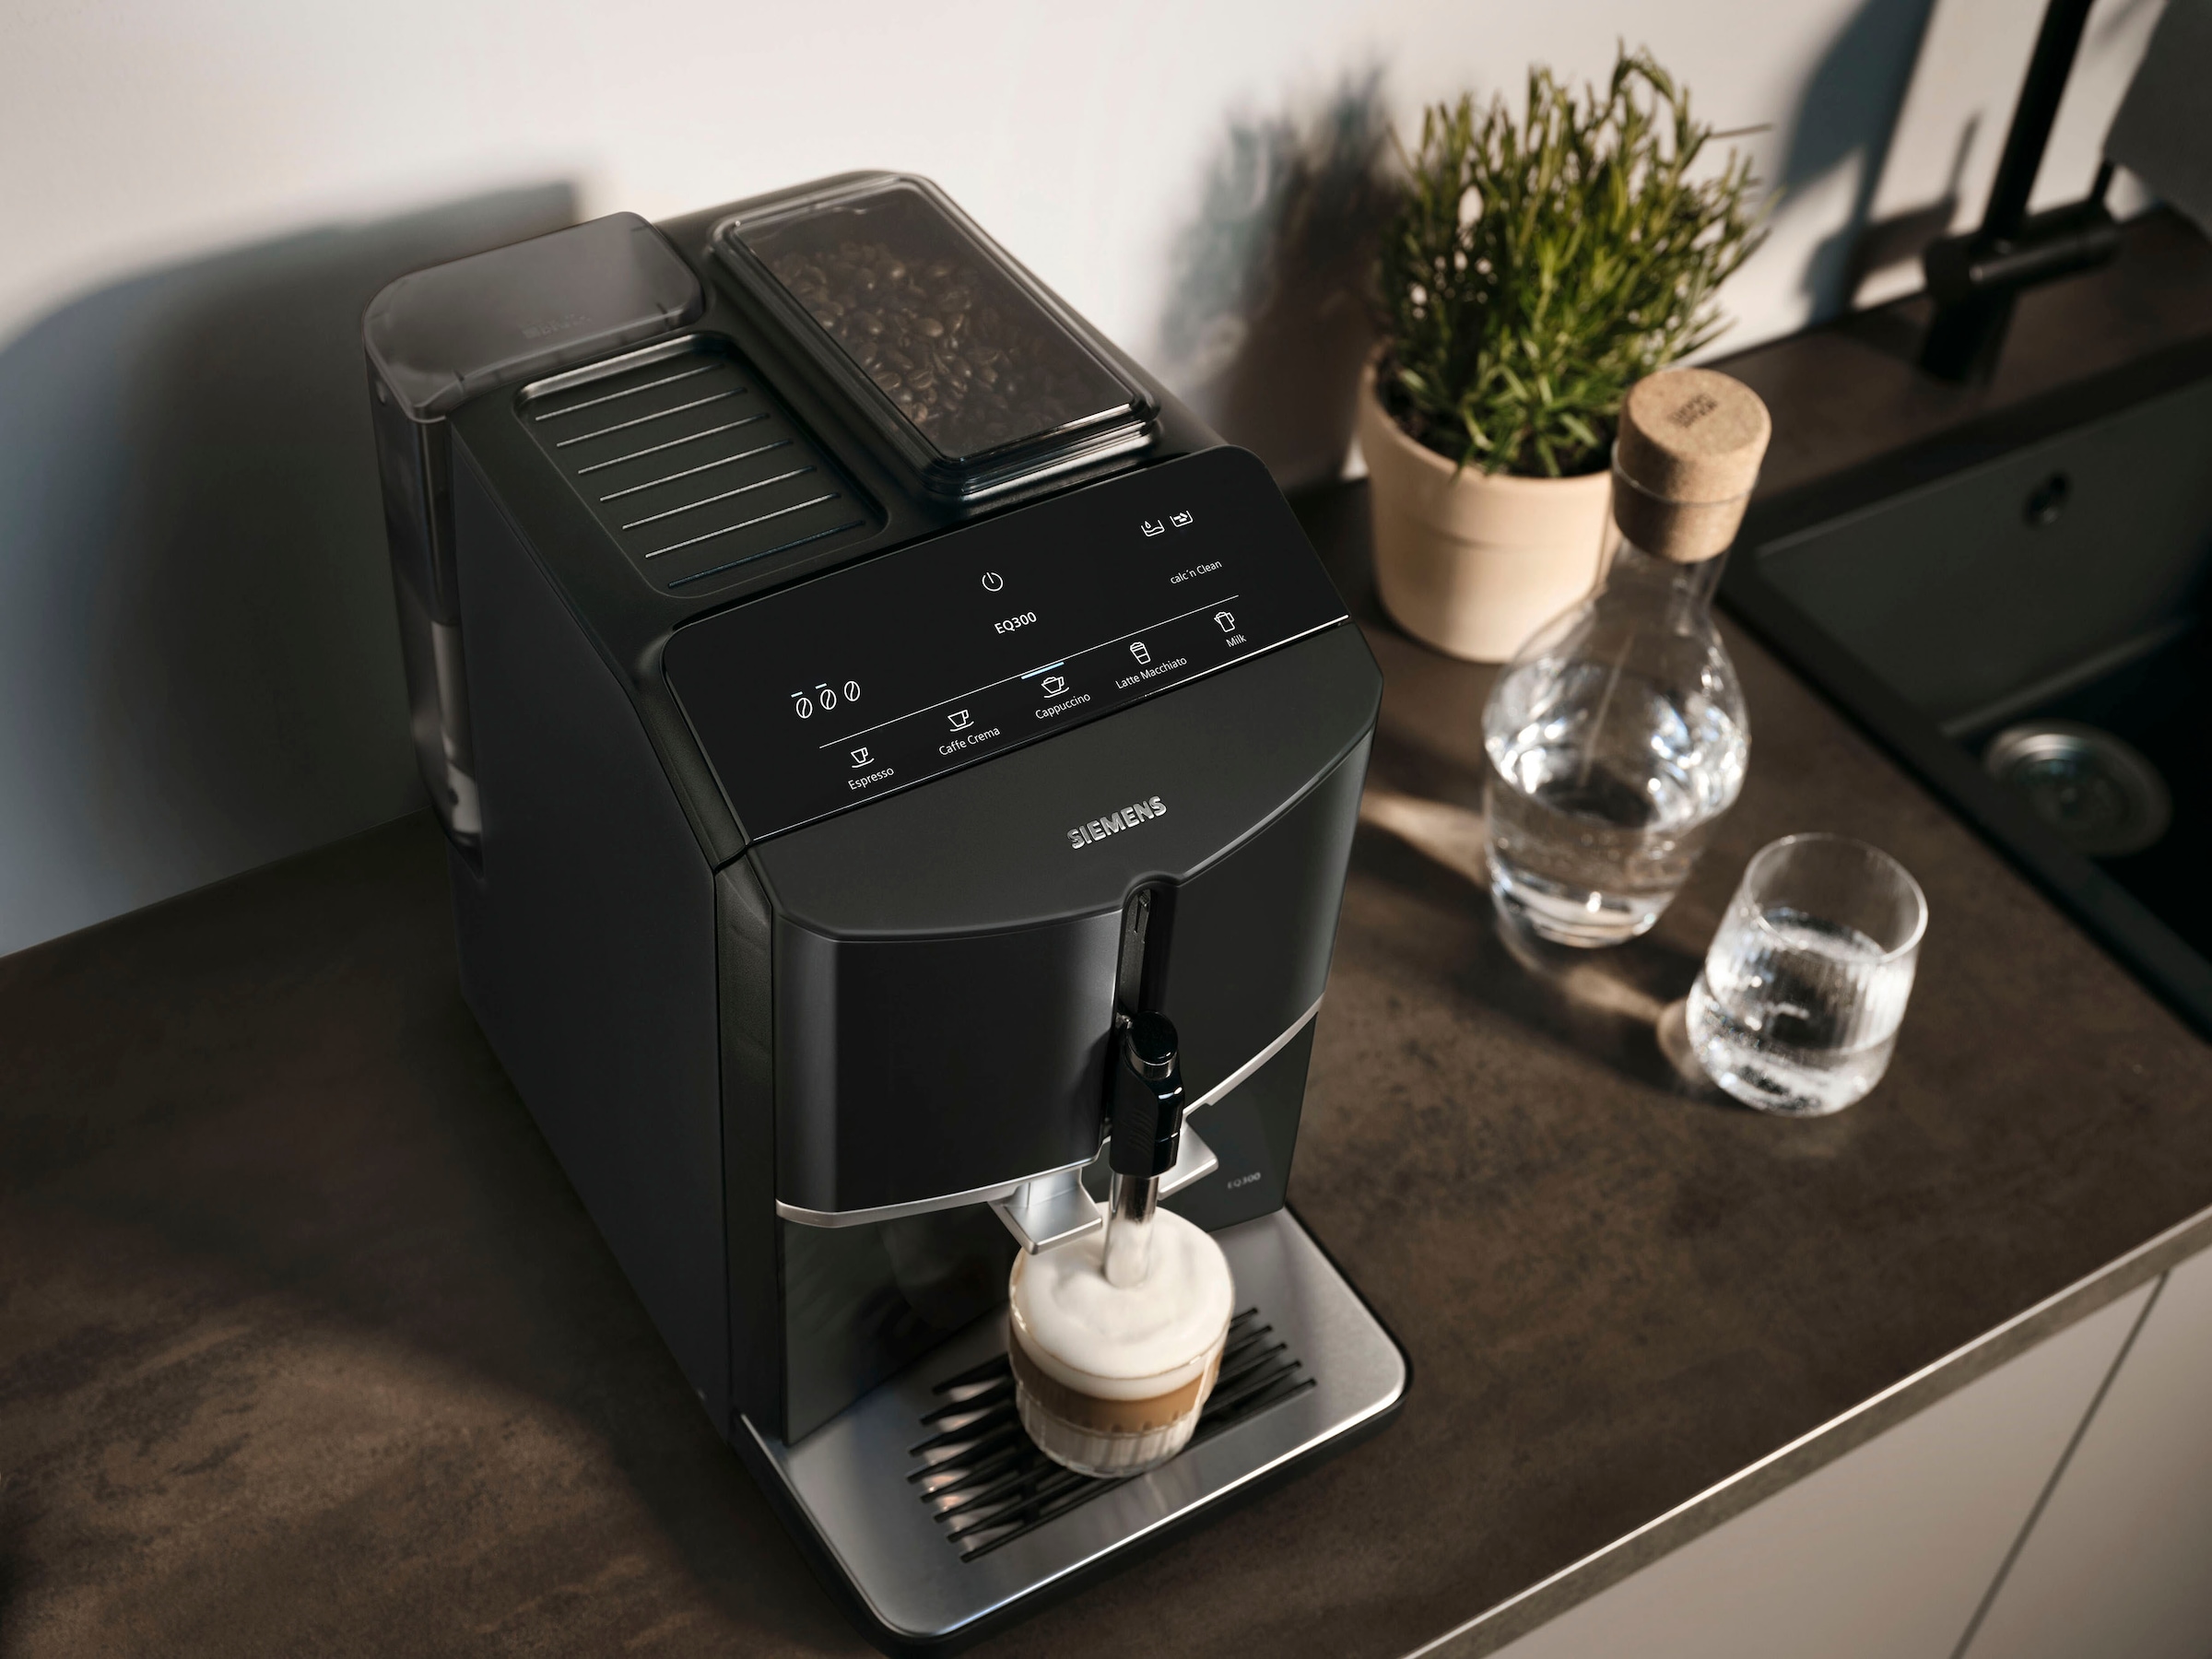 SIEMENS Kaffeevollautomat »EQ300 TF301E19, viele Kaffeespezialitäten, OneTouch-Funktion«, Milchaufschäumer, Keramikmahlwerk, klavierlack schwarz